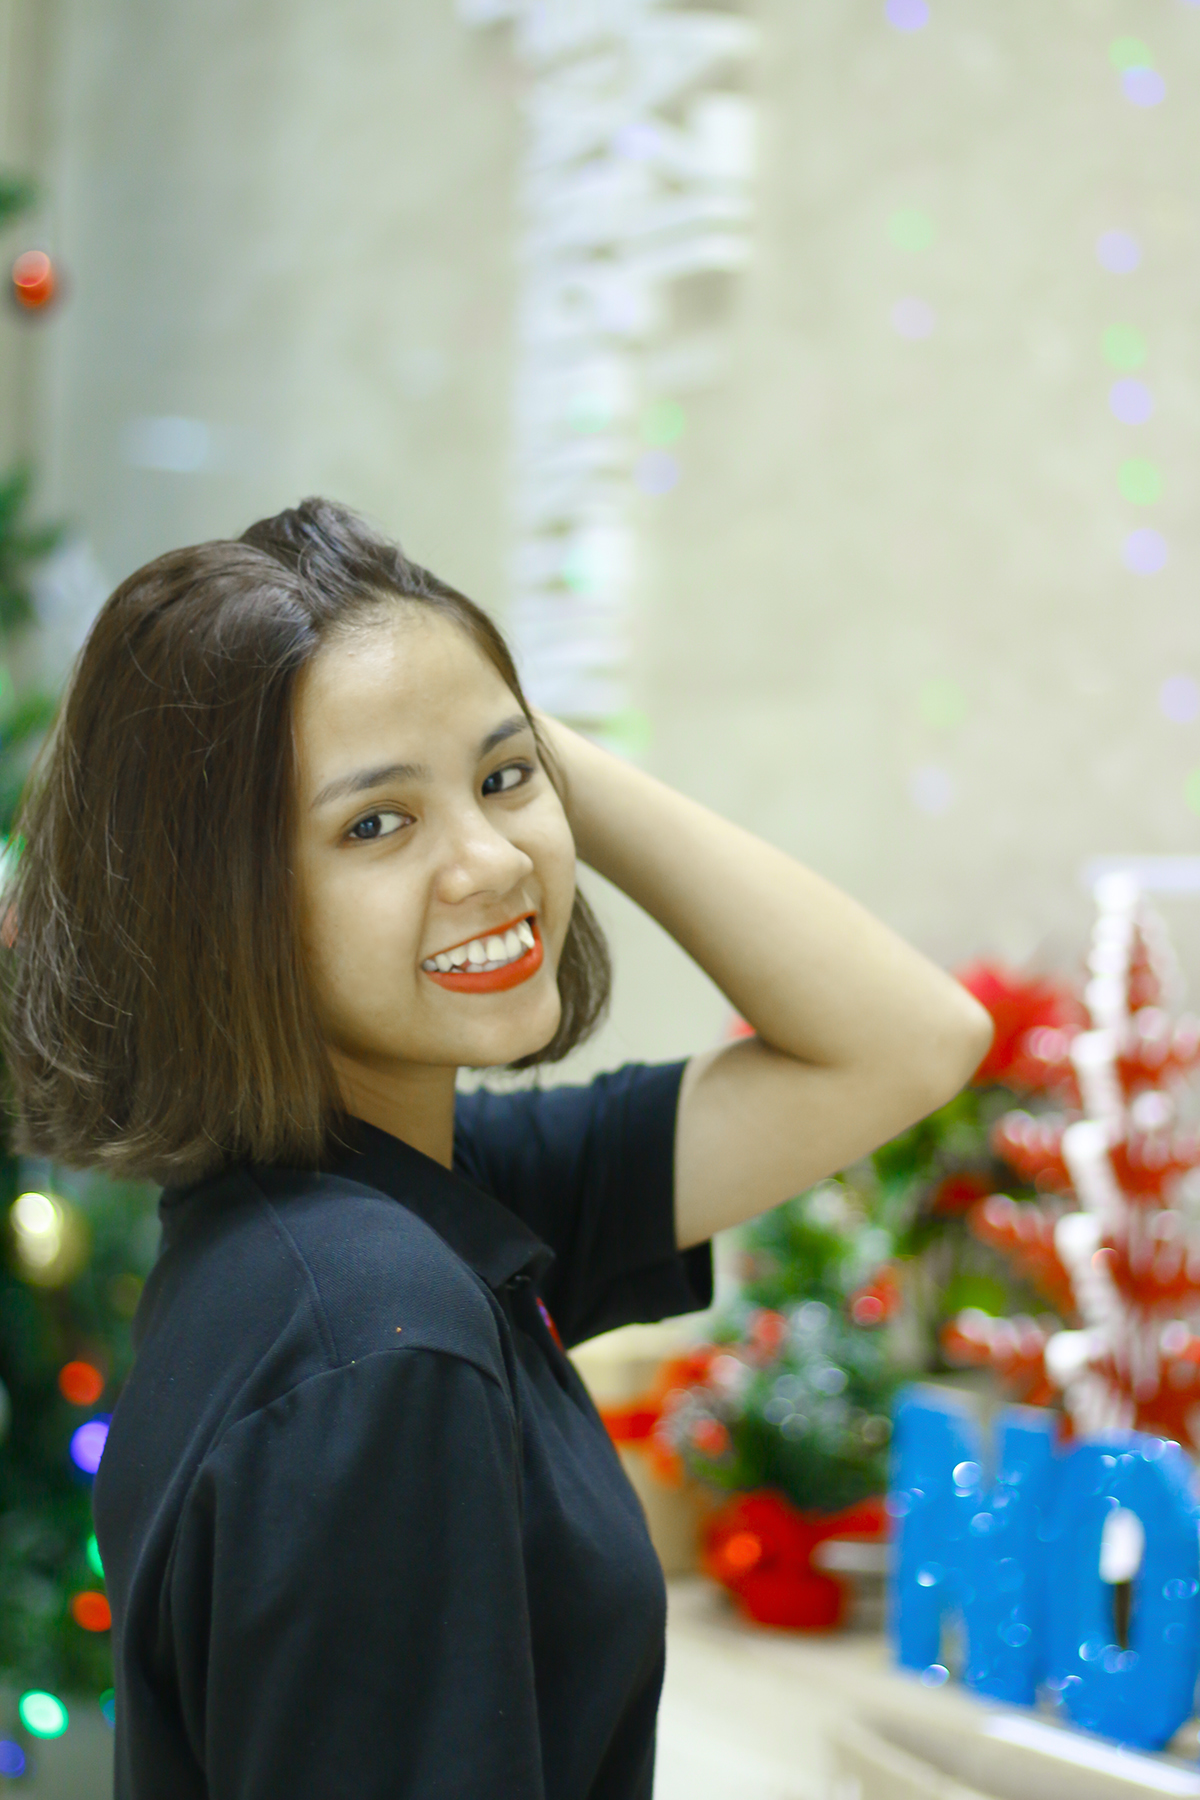 <p> Huỳnh Thảo Trang, nhân viên kinh doanh FPT Telecom, muốn nhắn gửi: "Chúc tất cả mọi người mùa Giáng sinh an lành, ấm áp bên người thân yêu của mình". </p>